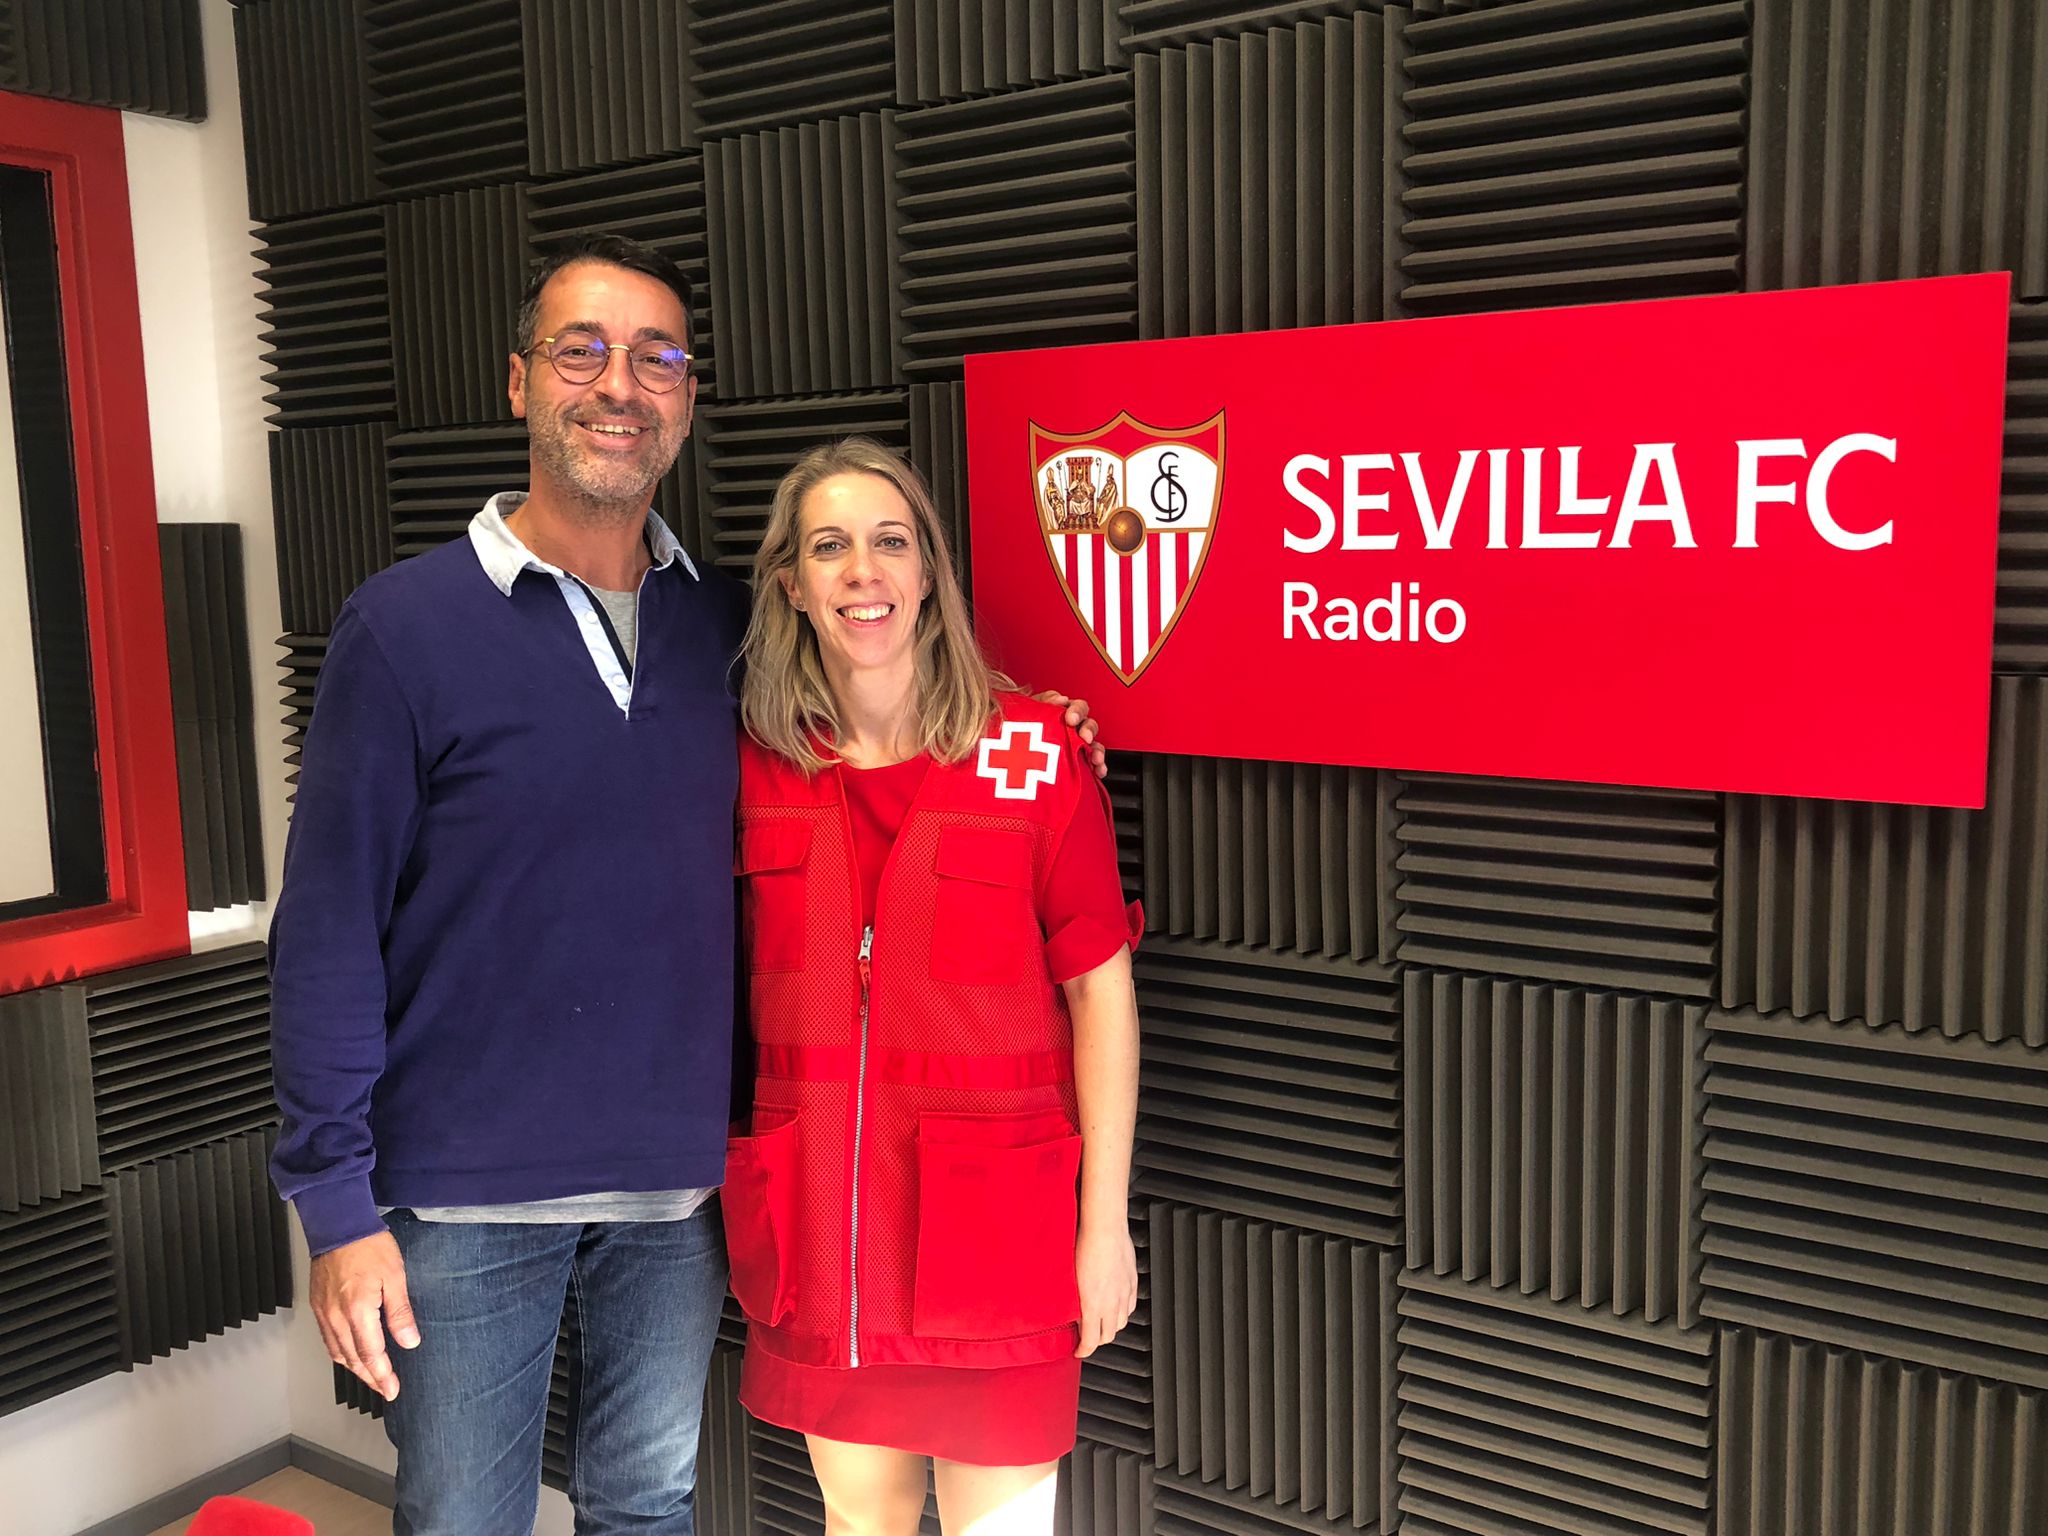 Sevilla FC Foundation